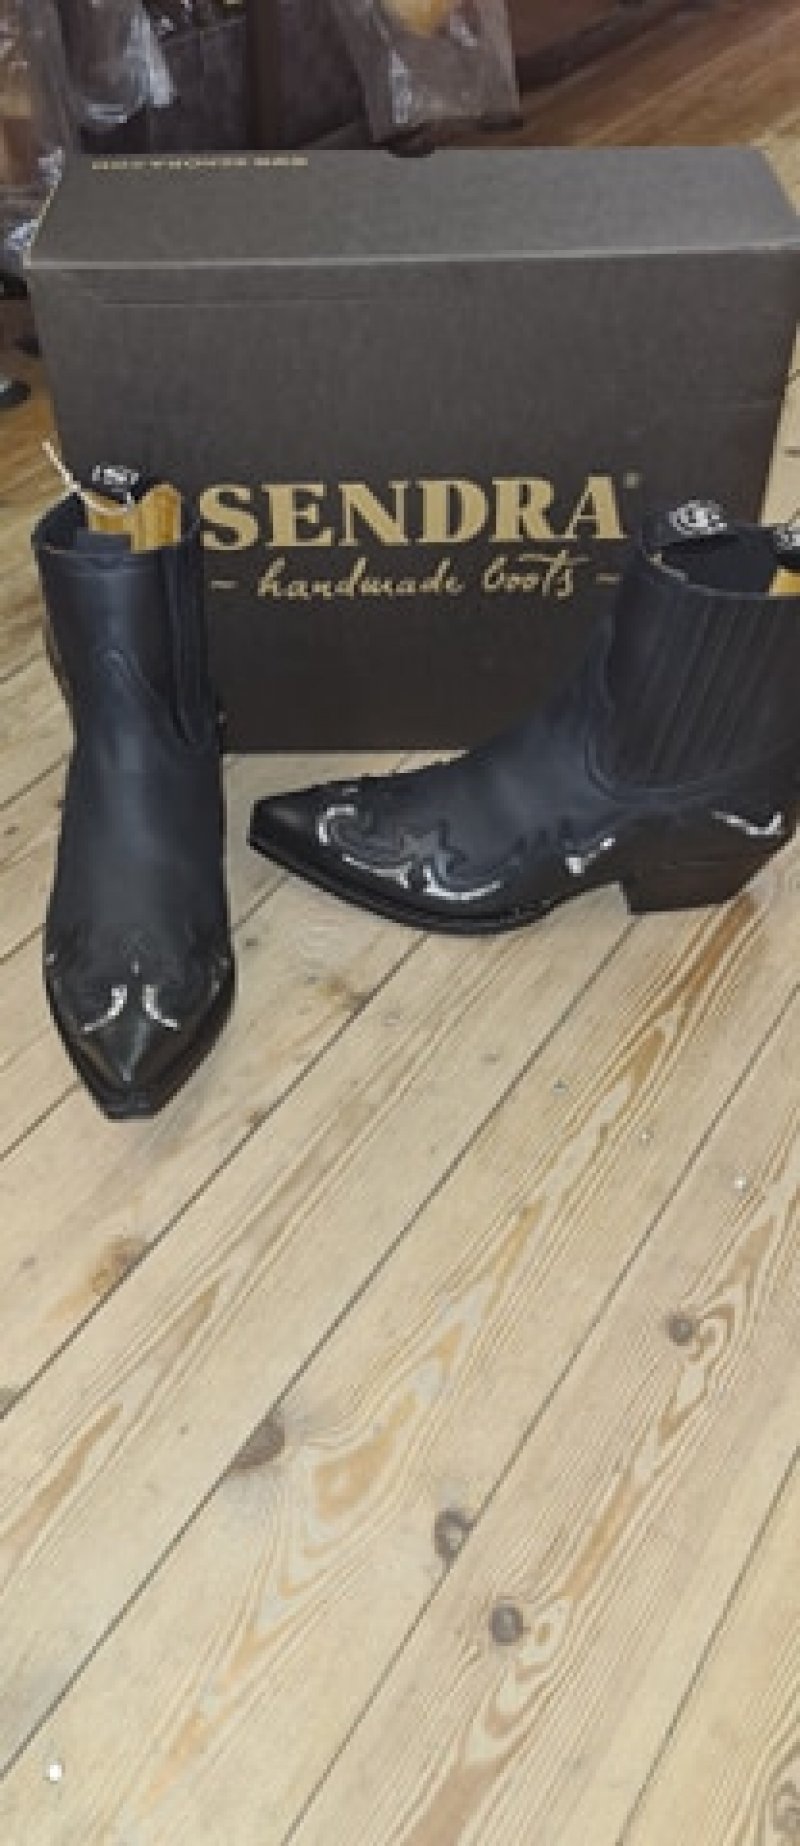 Sendra Boots Pull Oil Black Low Cut